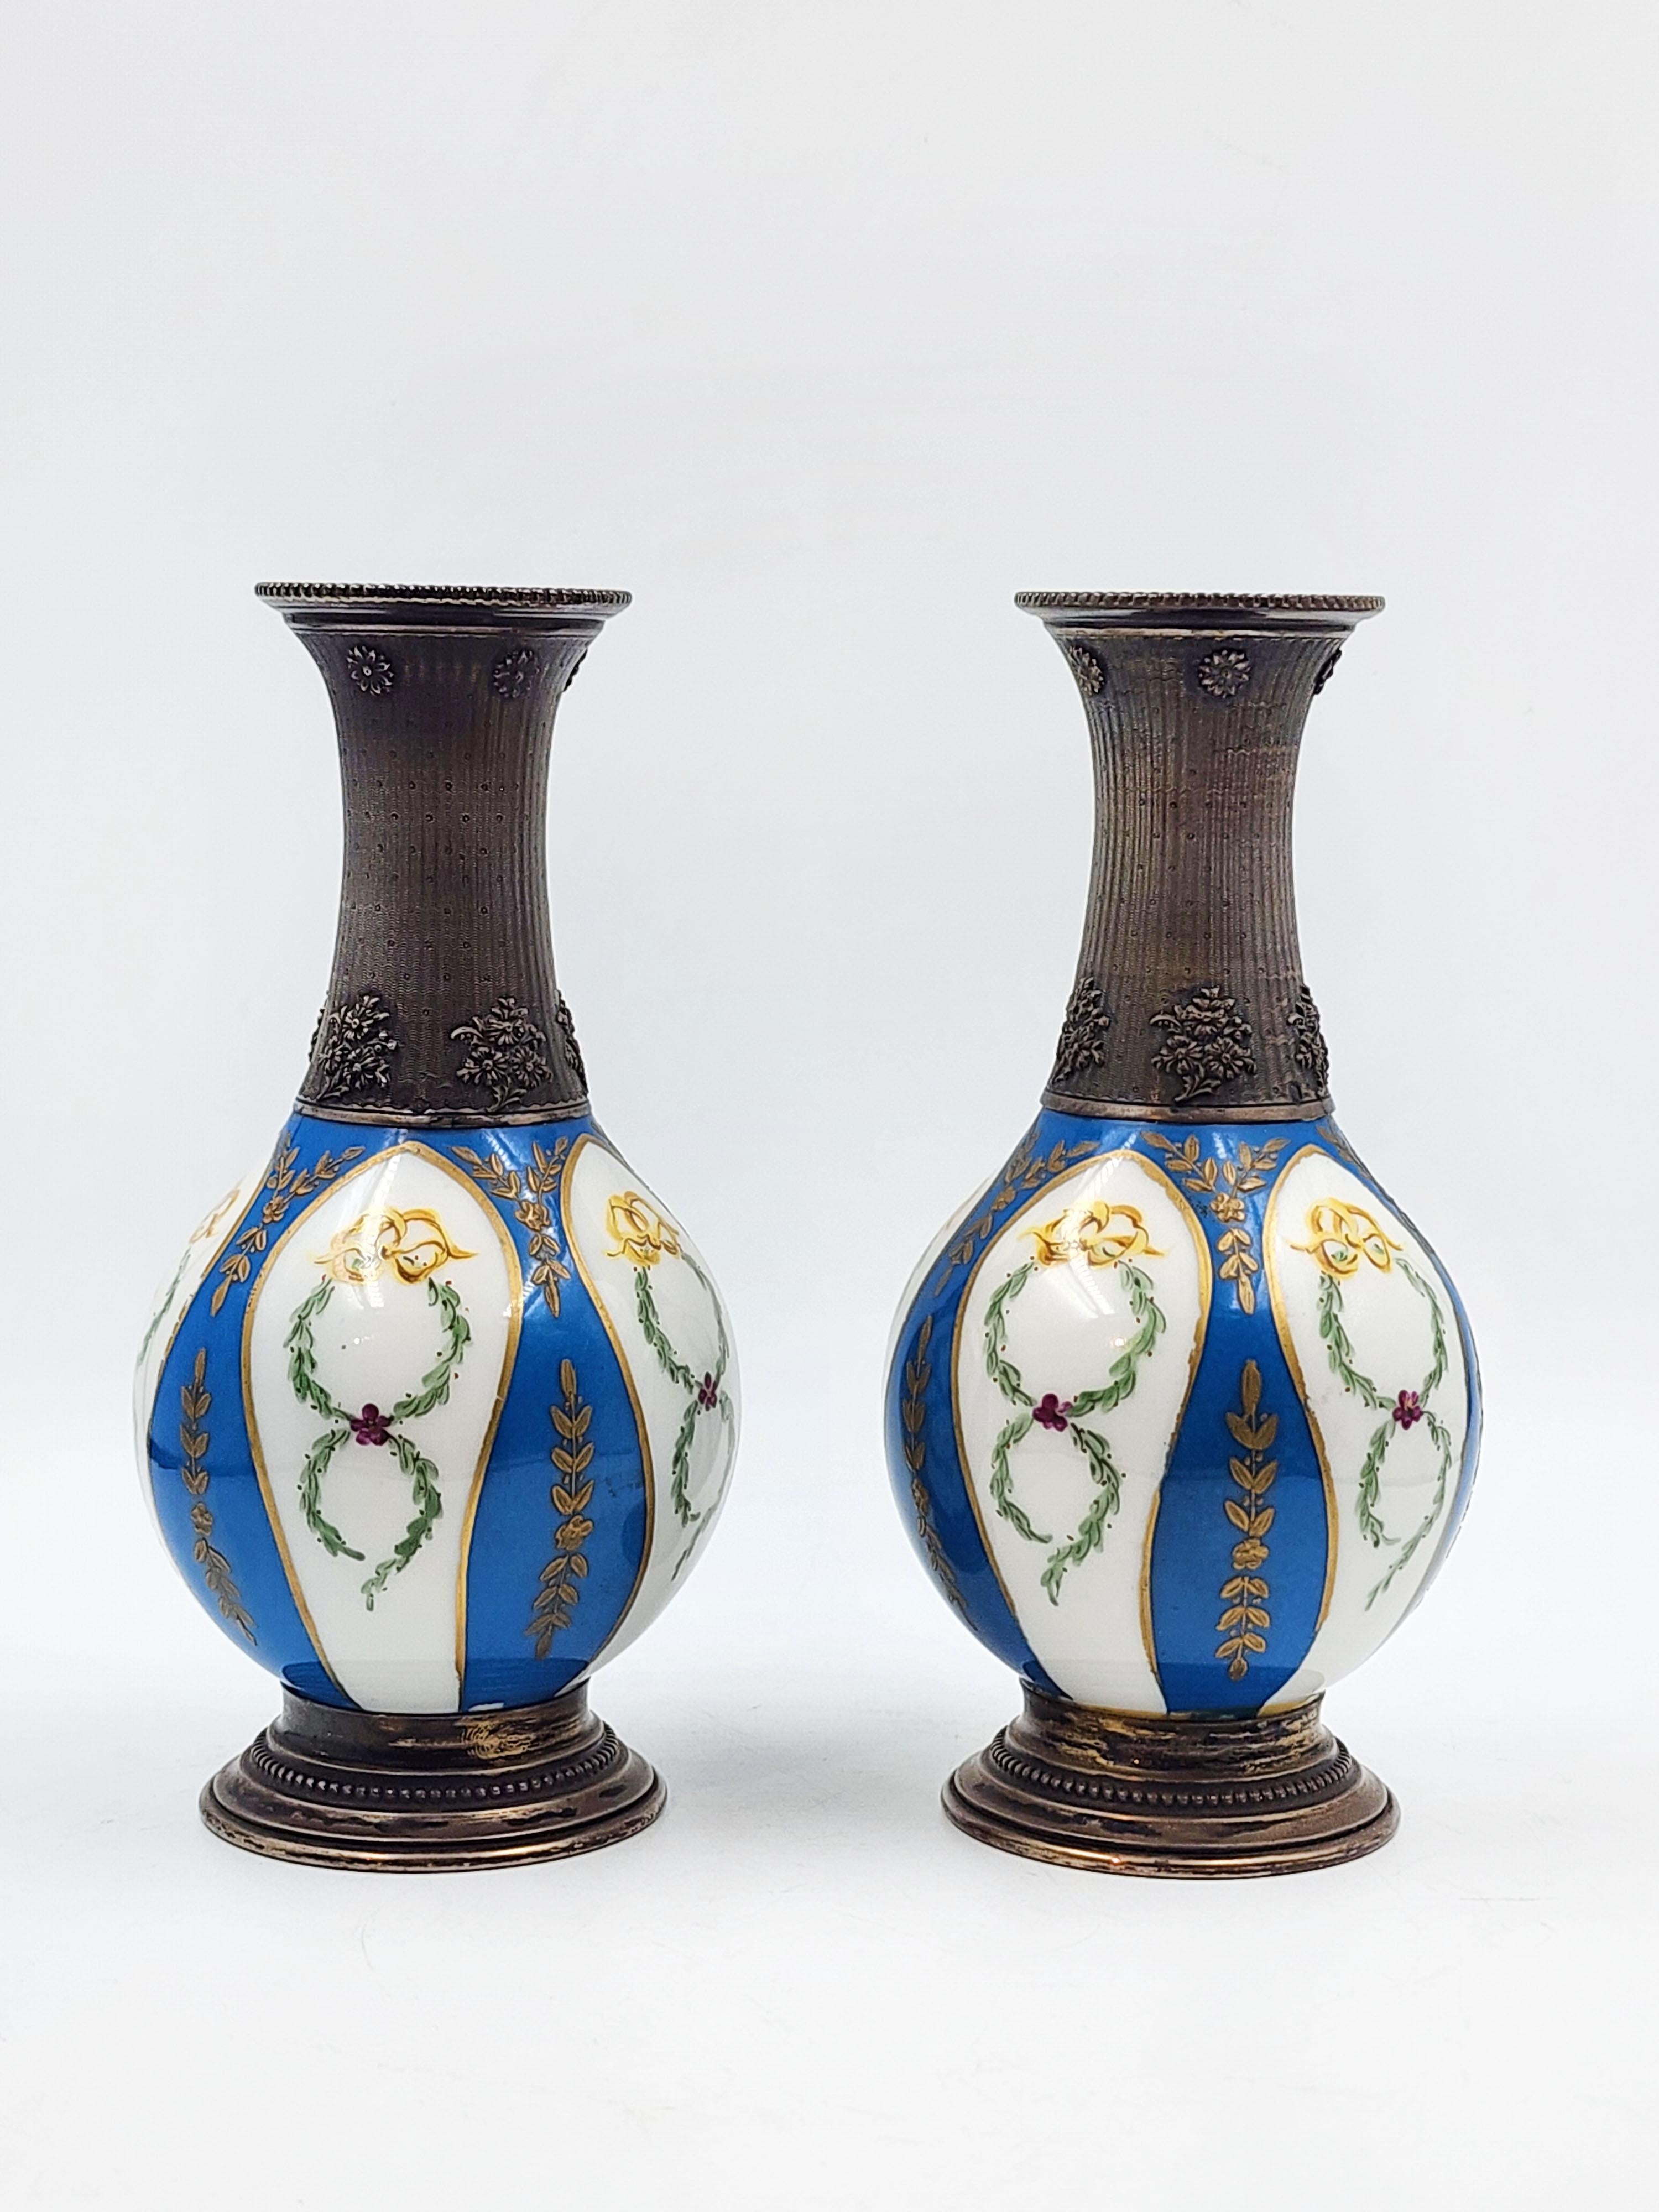 Paar Sevres-Vasen aus Silber und Porzellan, 19. Jahrhundert
Schönes Paar Sèvres-Porzellanvasen in Blau und Weiß mit goldenen Blumendetails, mit silbernem Hals, Mund und Boden. Der obere Teil ist strukturiert.
Maßnahmen:
Höhe: 15